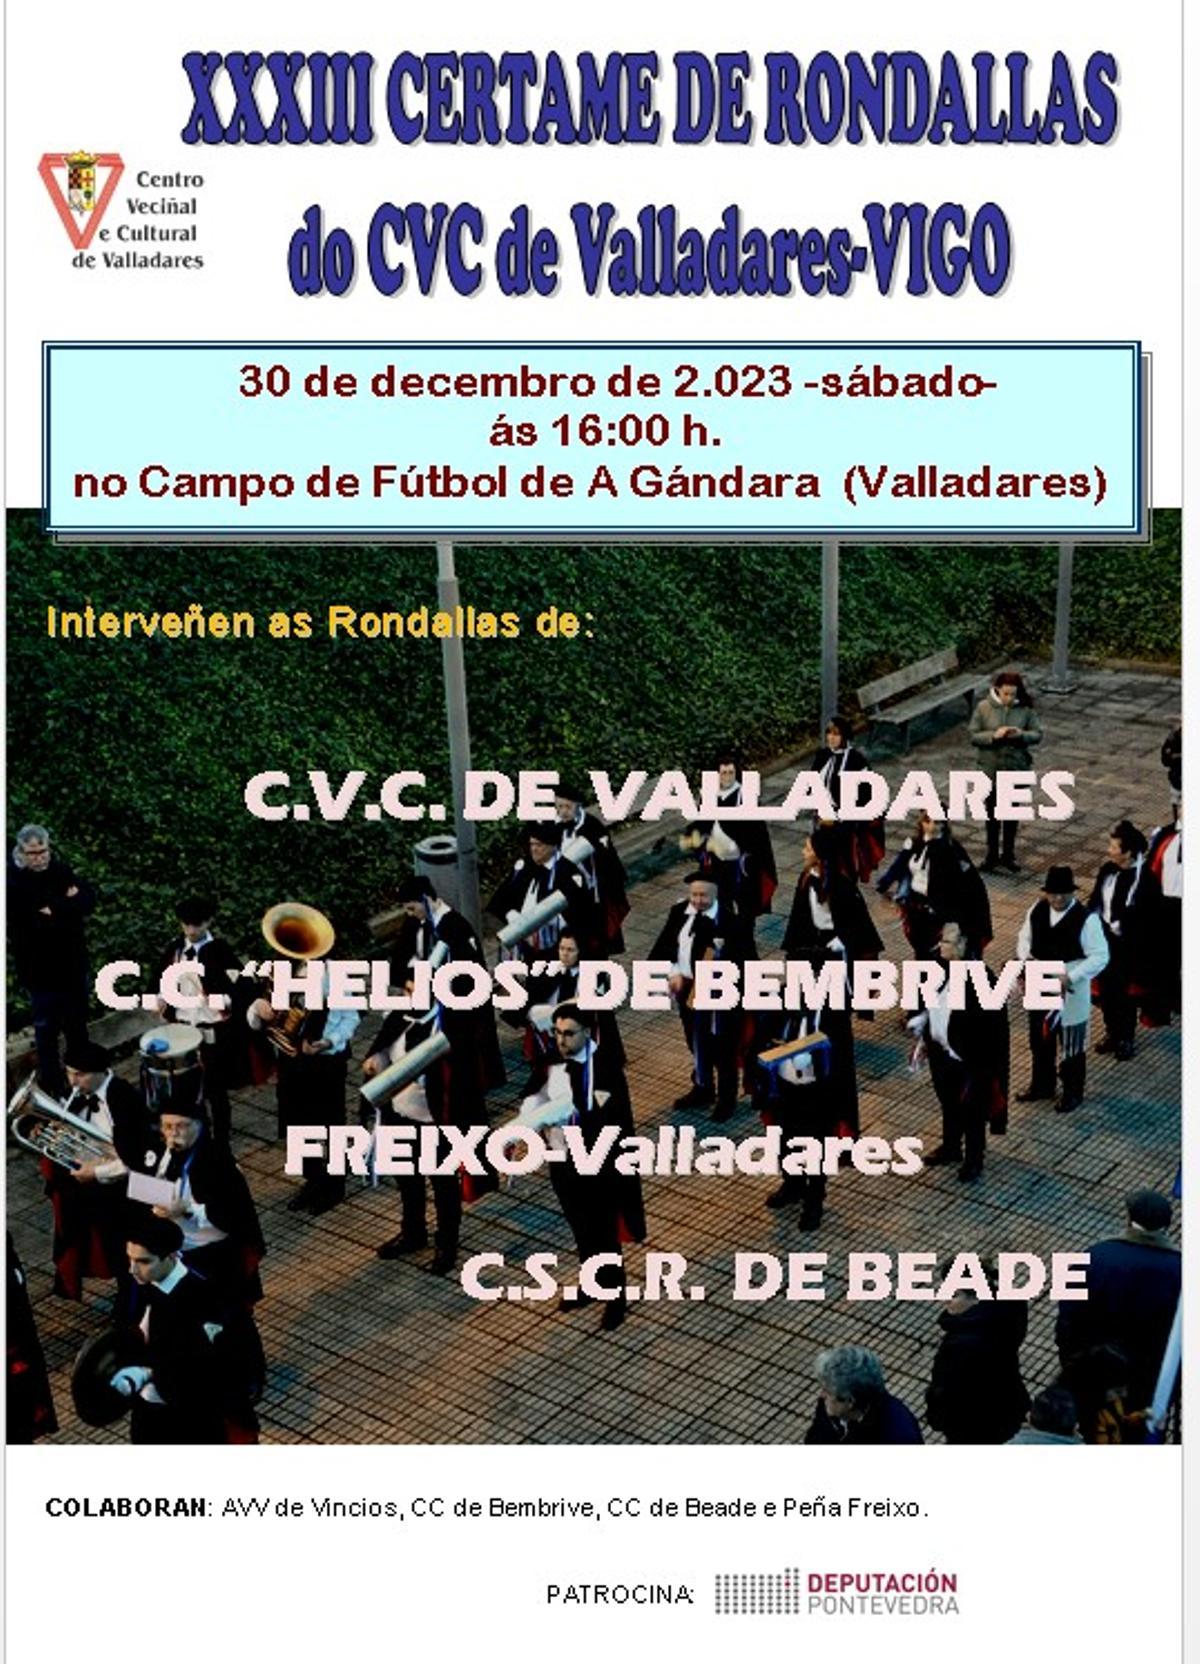 Cartel del certamen de rondallas en Valladares.